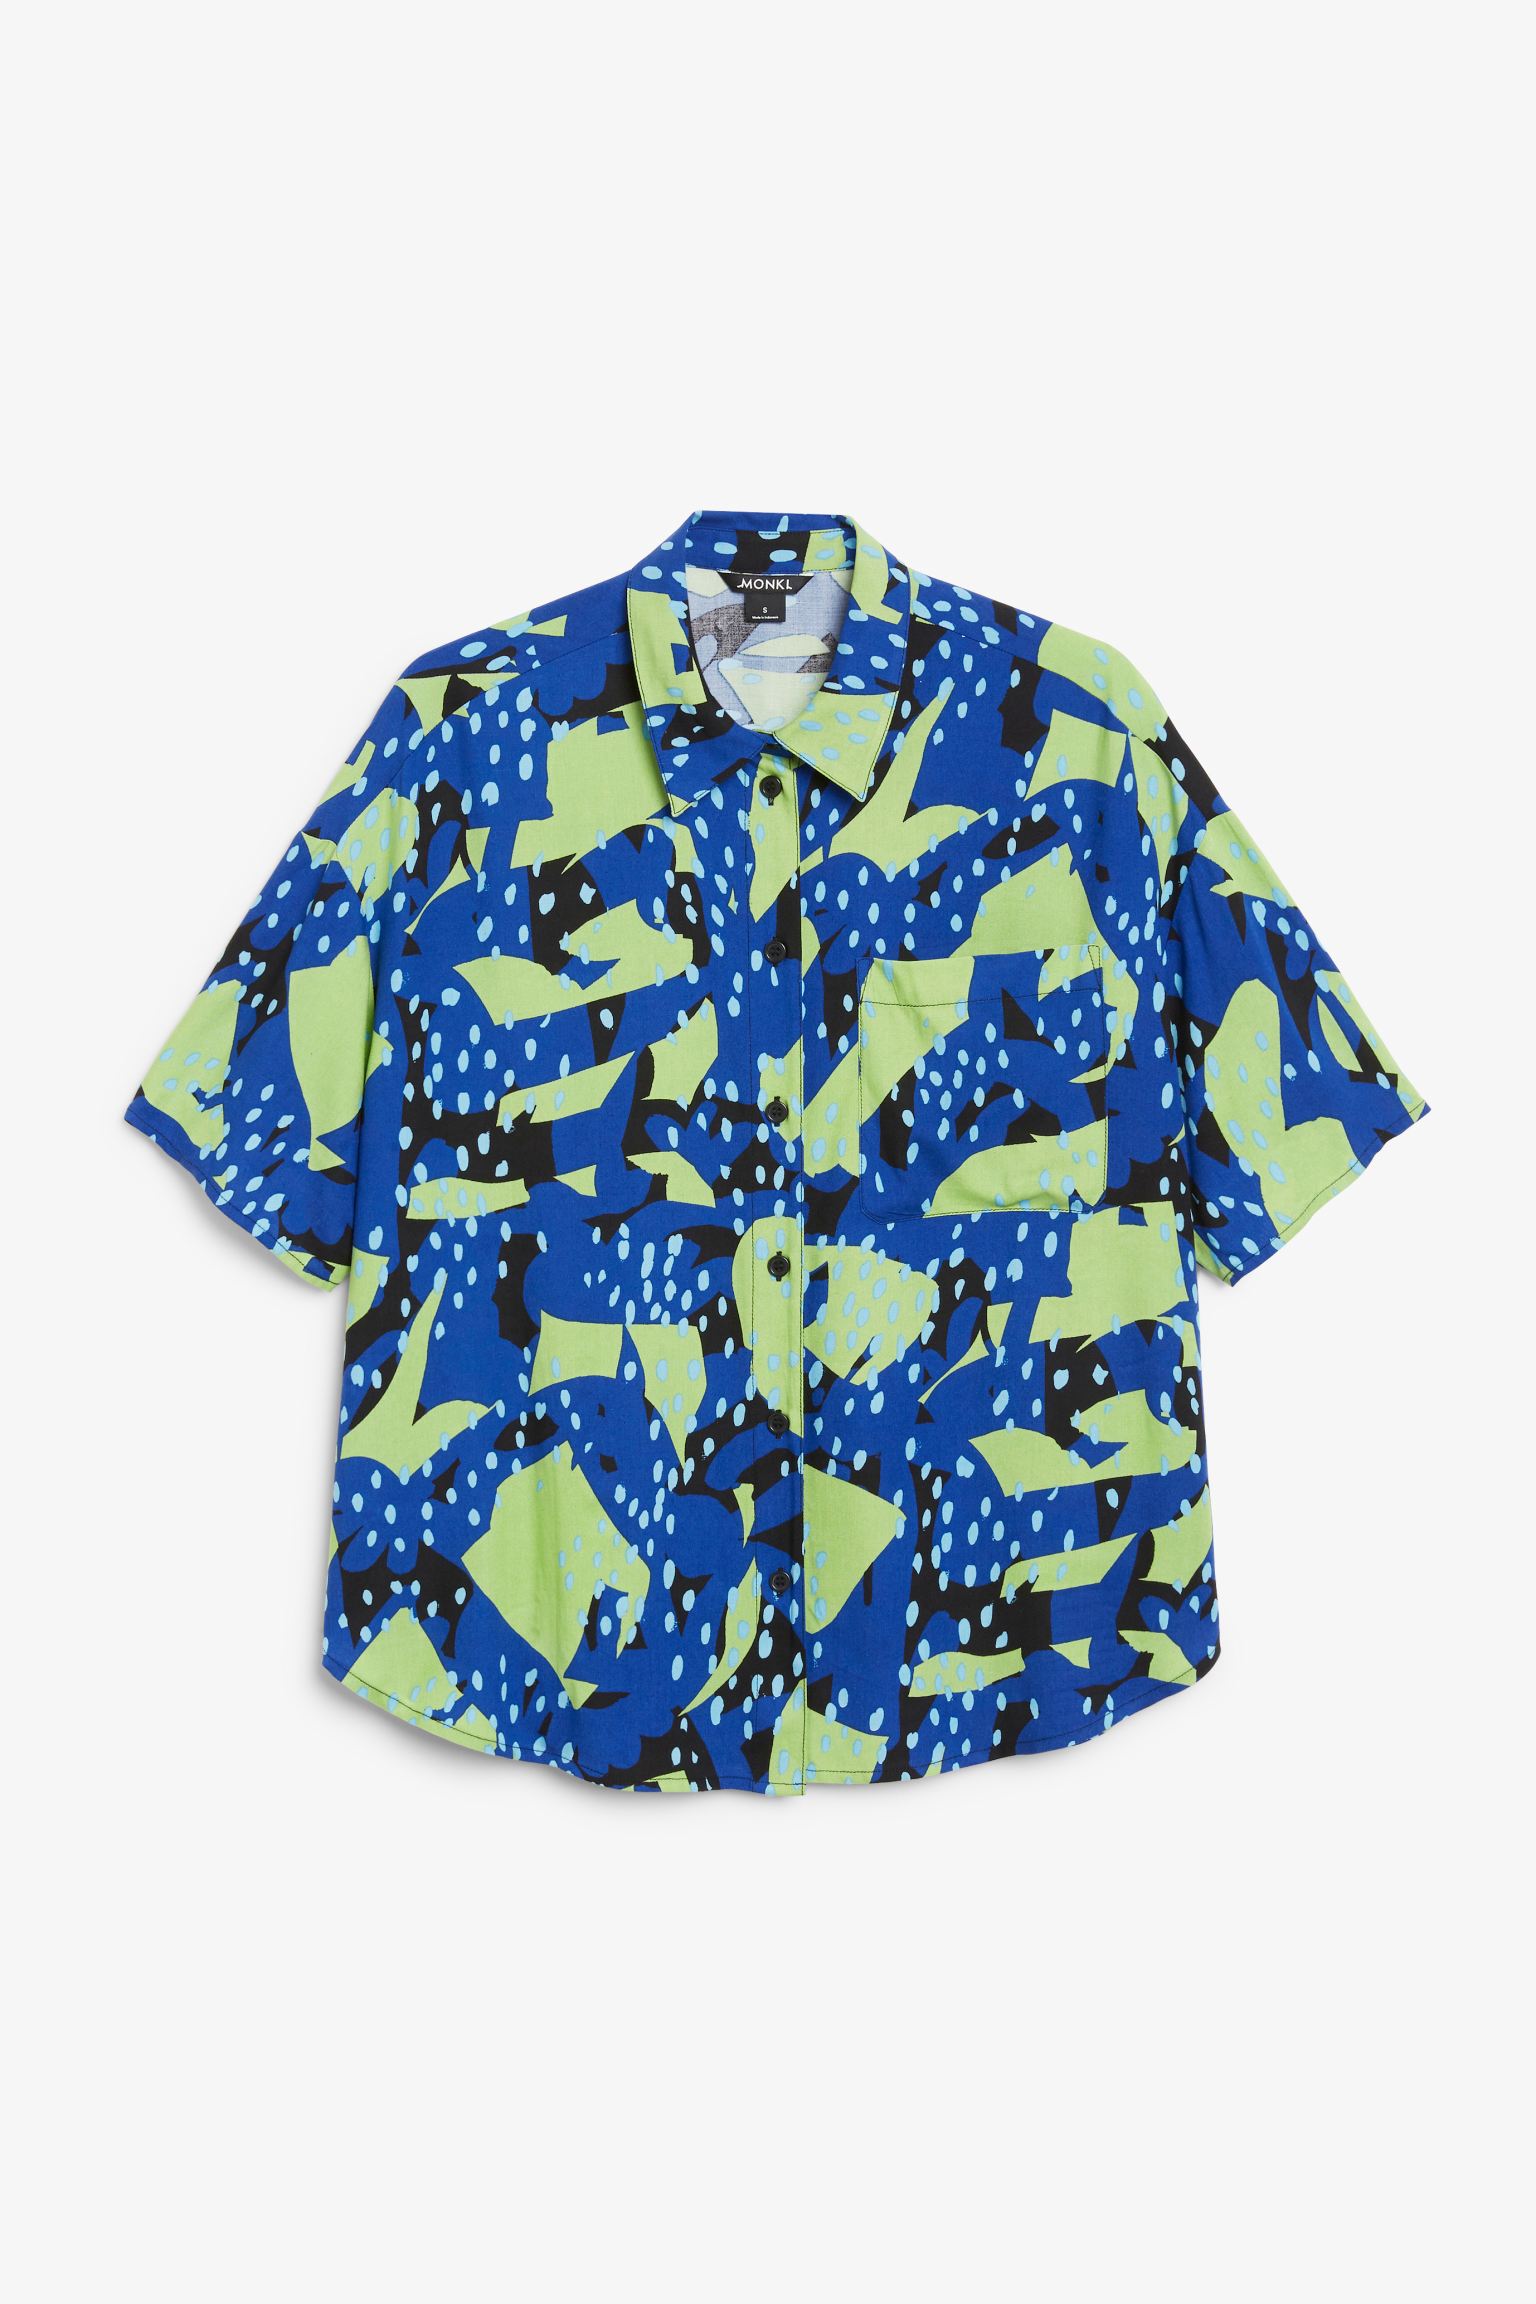 Рубашка женская Monki 972319020 синяя XL (доставка из-за рубежа)